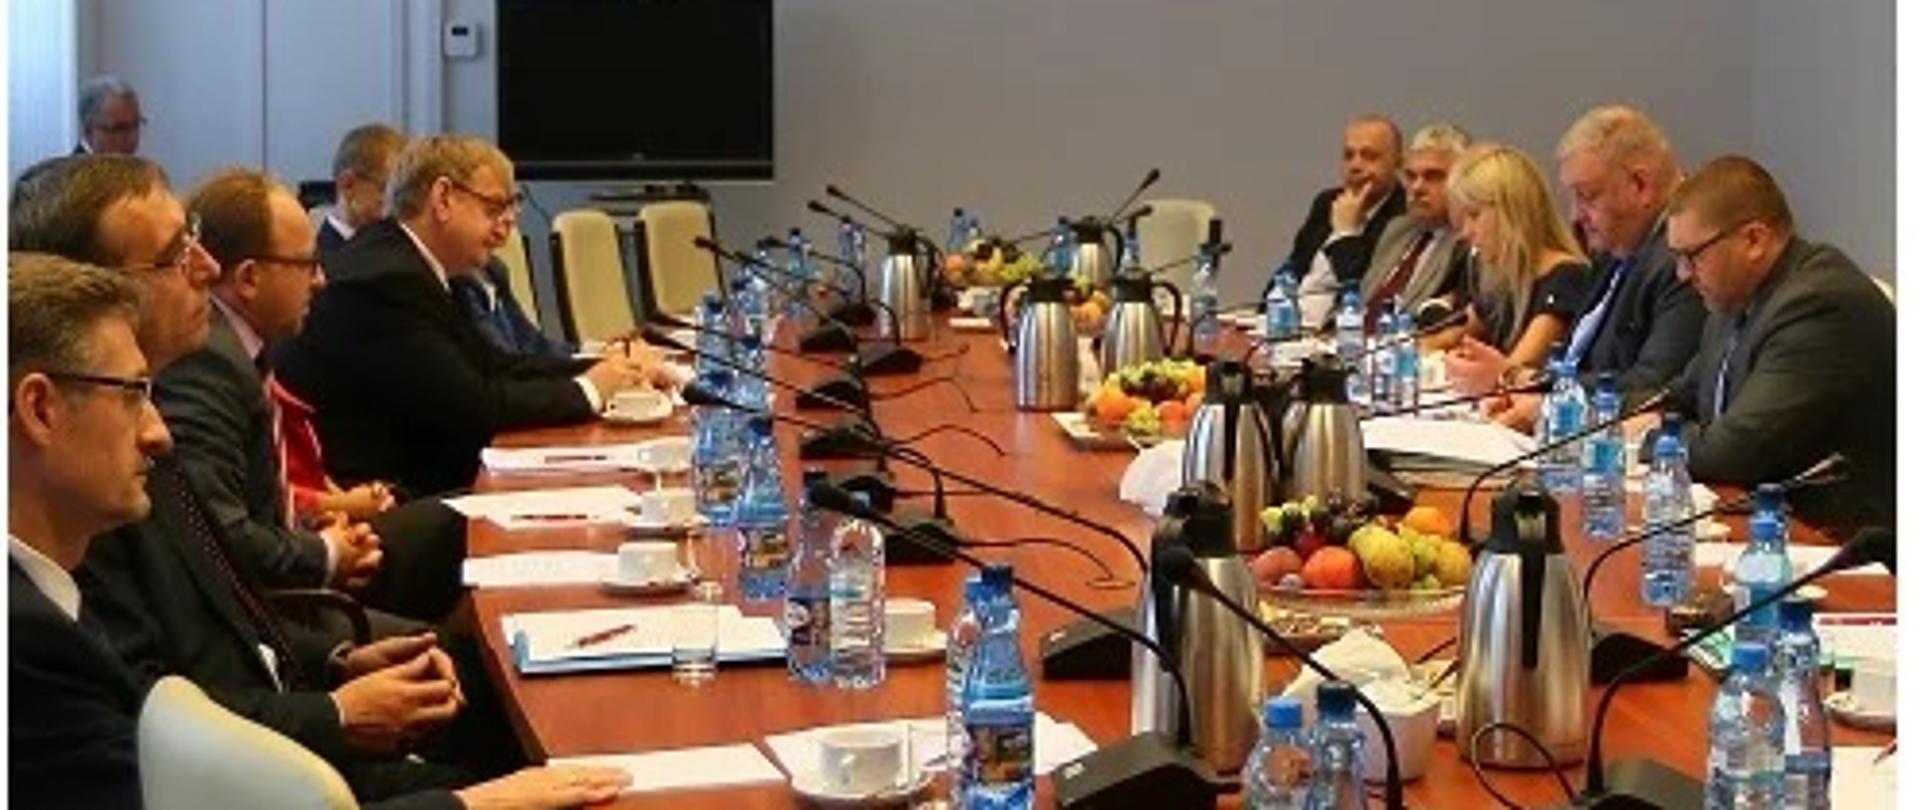 zdjęcia przedstawiające kierownictwo prokuratury przy okrągłym stole podczas Posiedzenia Krajowej Rady Prokuratorów przy Prokuratorze Generalnym w dniu 30 sierpnia 2017 r.